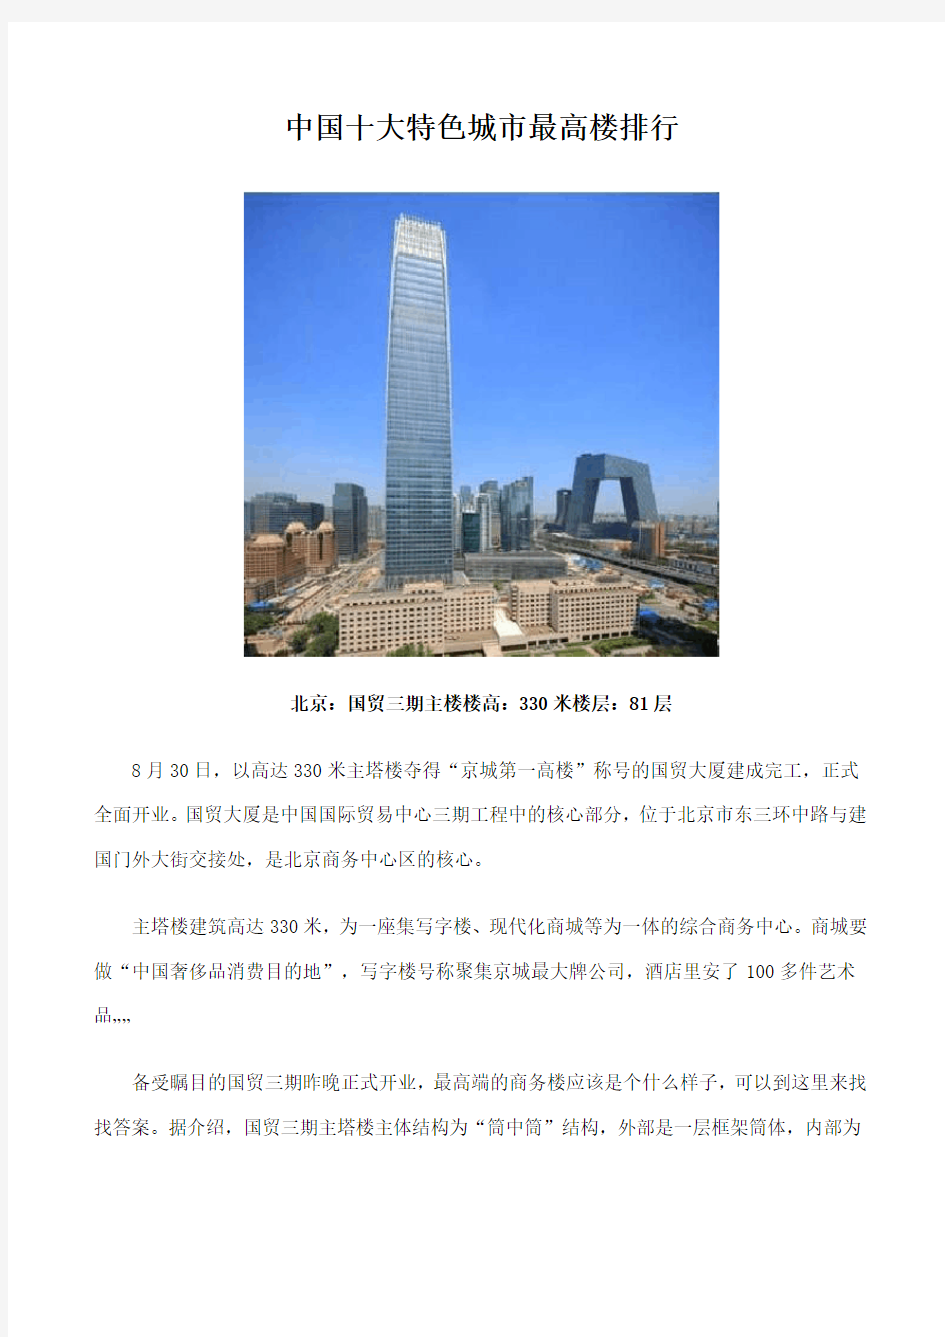 中国十大特色城市最高楼排行